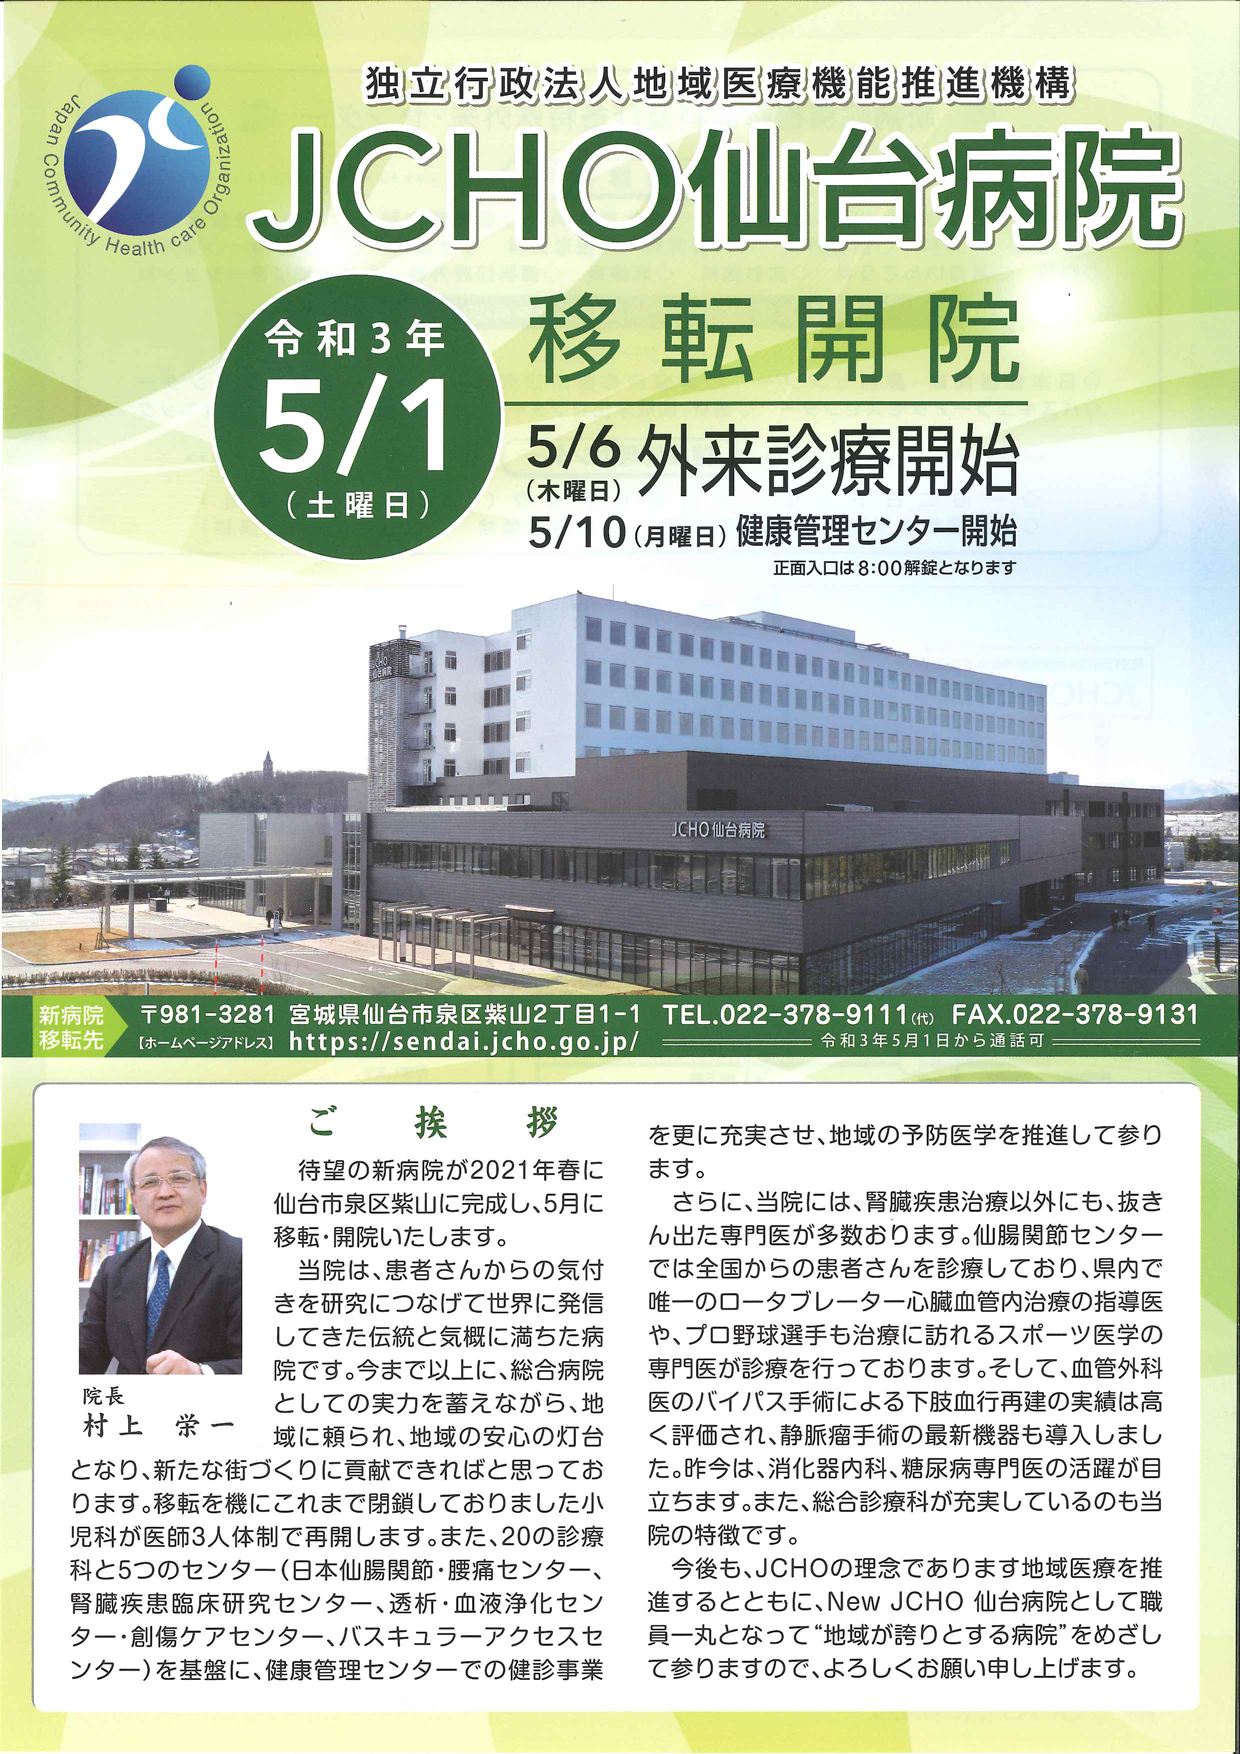 新病院情報 令和3年5月1日新病院が開院しました 仙台病院 地域医療機能推進機構